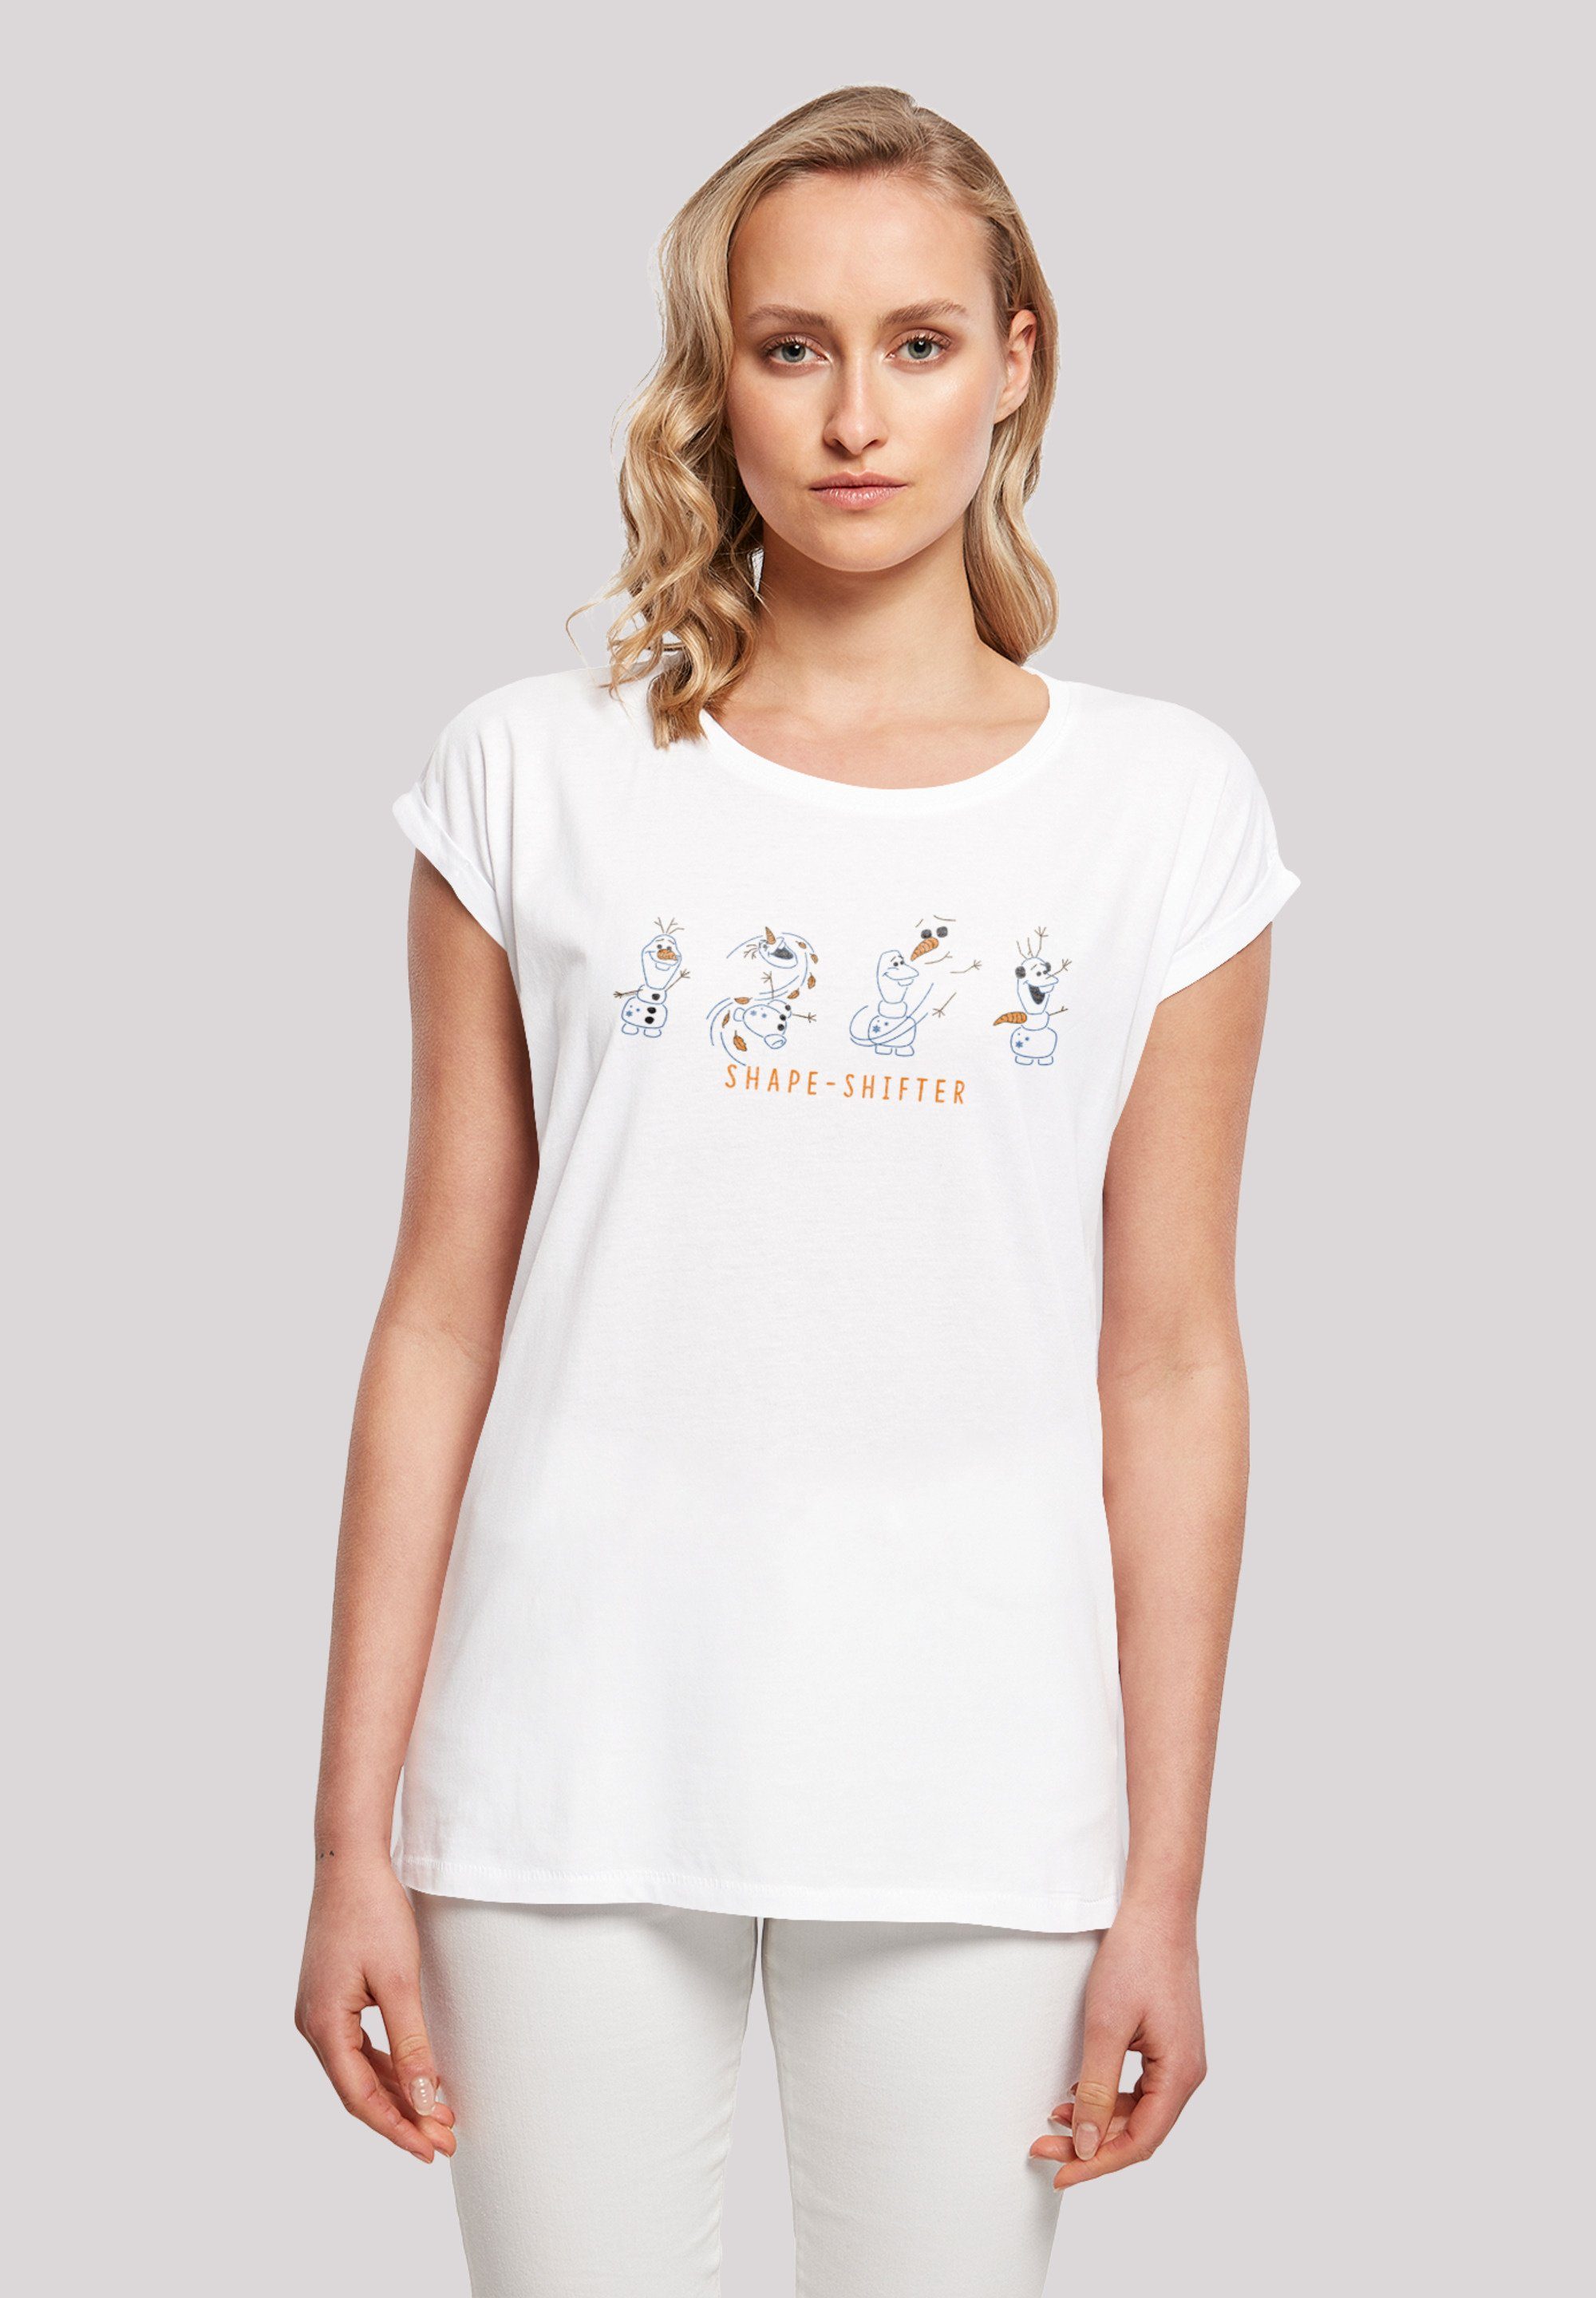 weicher Olaf Tragekomfort 2 F4NT4STIC hohem Frozen Shape-Shifter mit Print, Baumwollstoff Disney Sehr T-Shirt